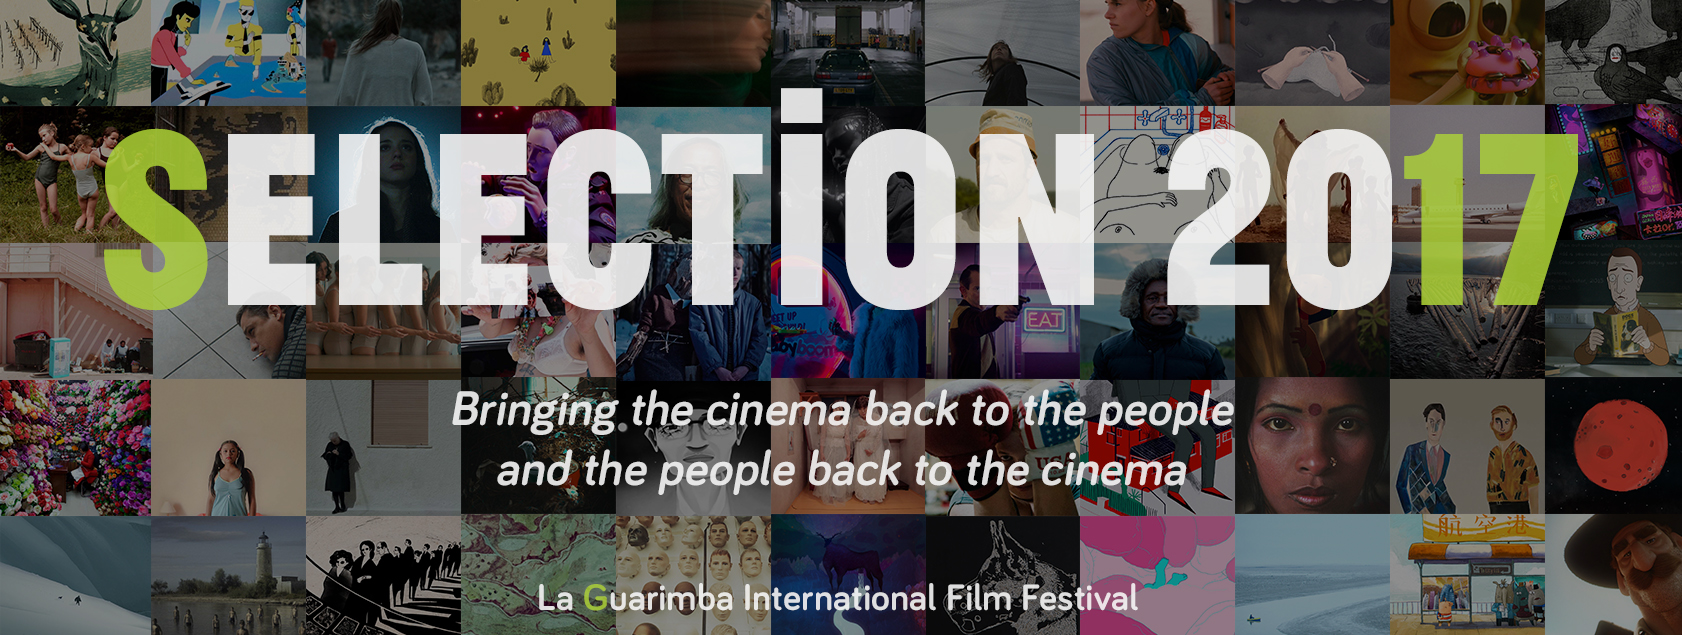 La Guarimba International Film Festival, El tornillo de Klaus, La Guarimba International Film Festival Selection 2017, short film festival, la guarimba selección 2017, la guarimba short film selection 2017,